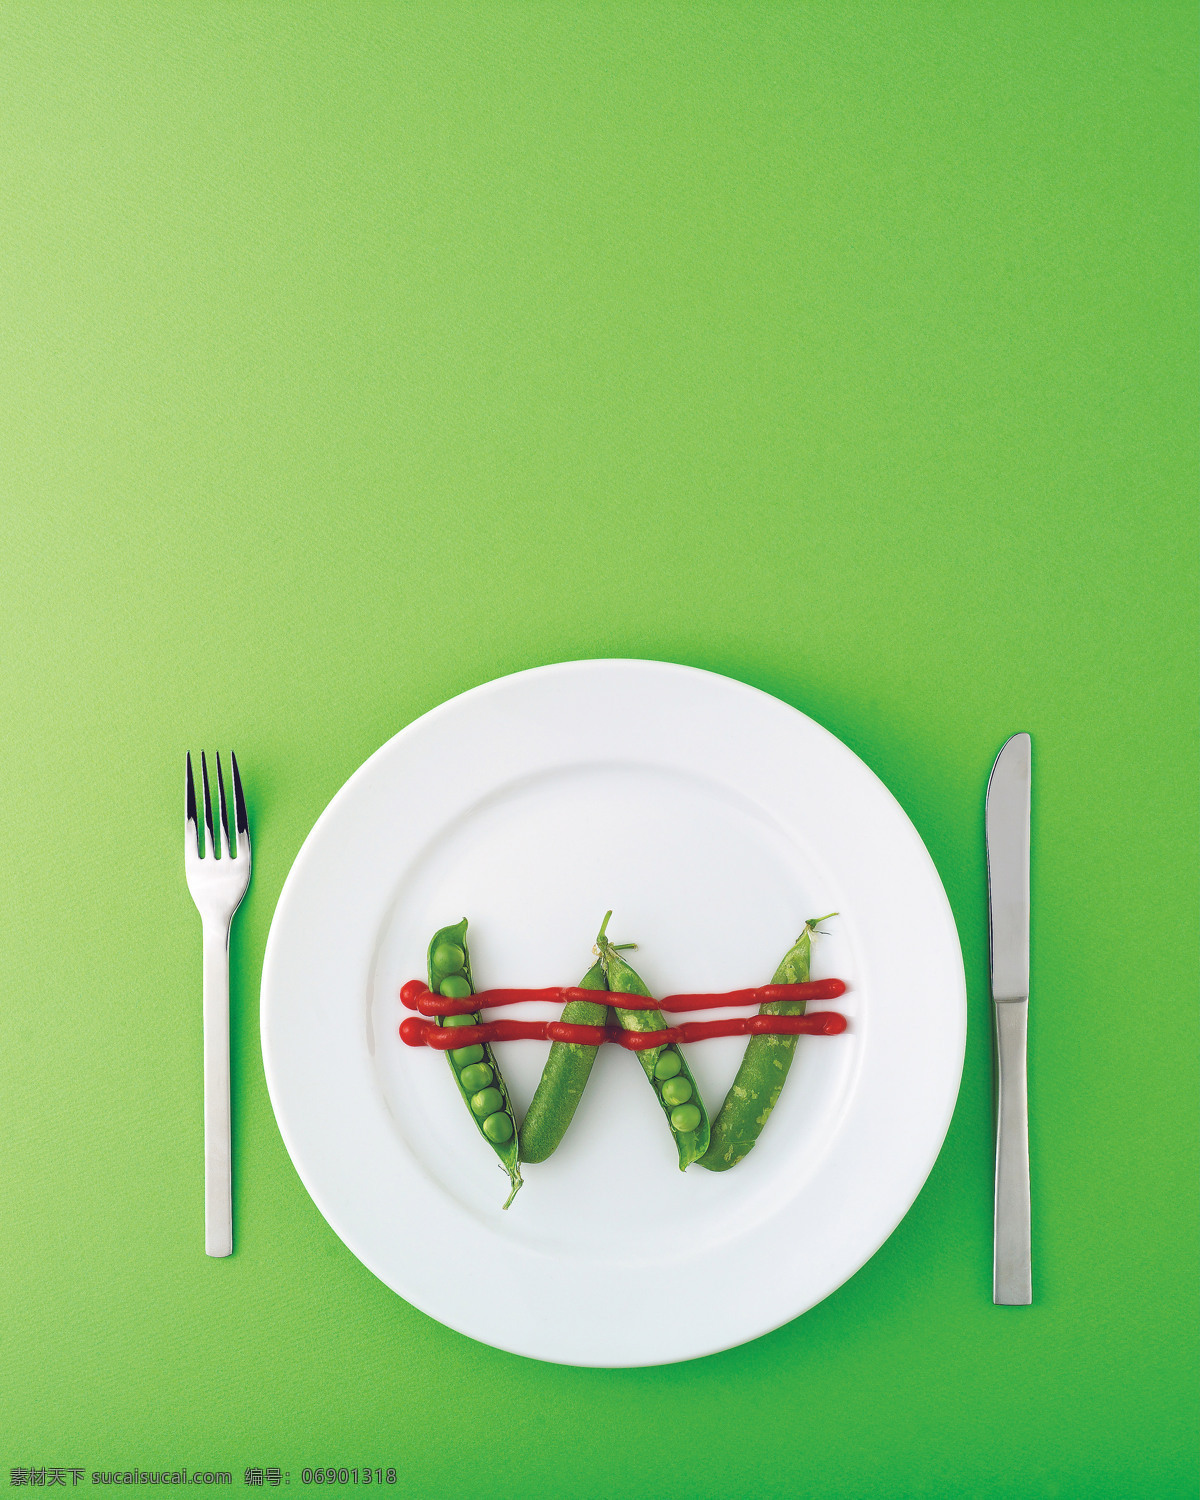 静物 物品 创意 组合 造型 刀叉 碟子 盘子 西餐 豆荚 番茄酱 w 风景 生活 旅游餐饮